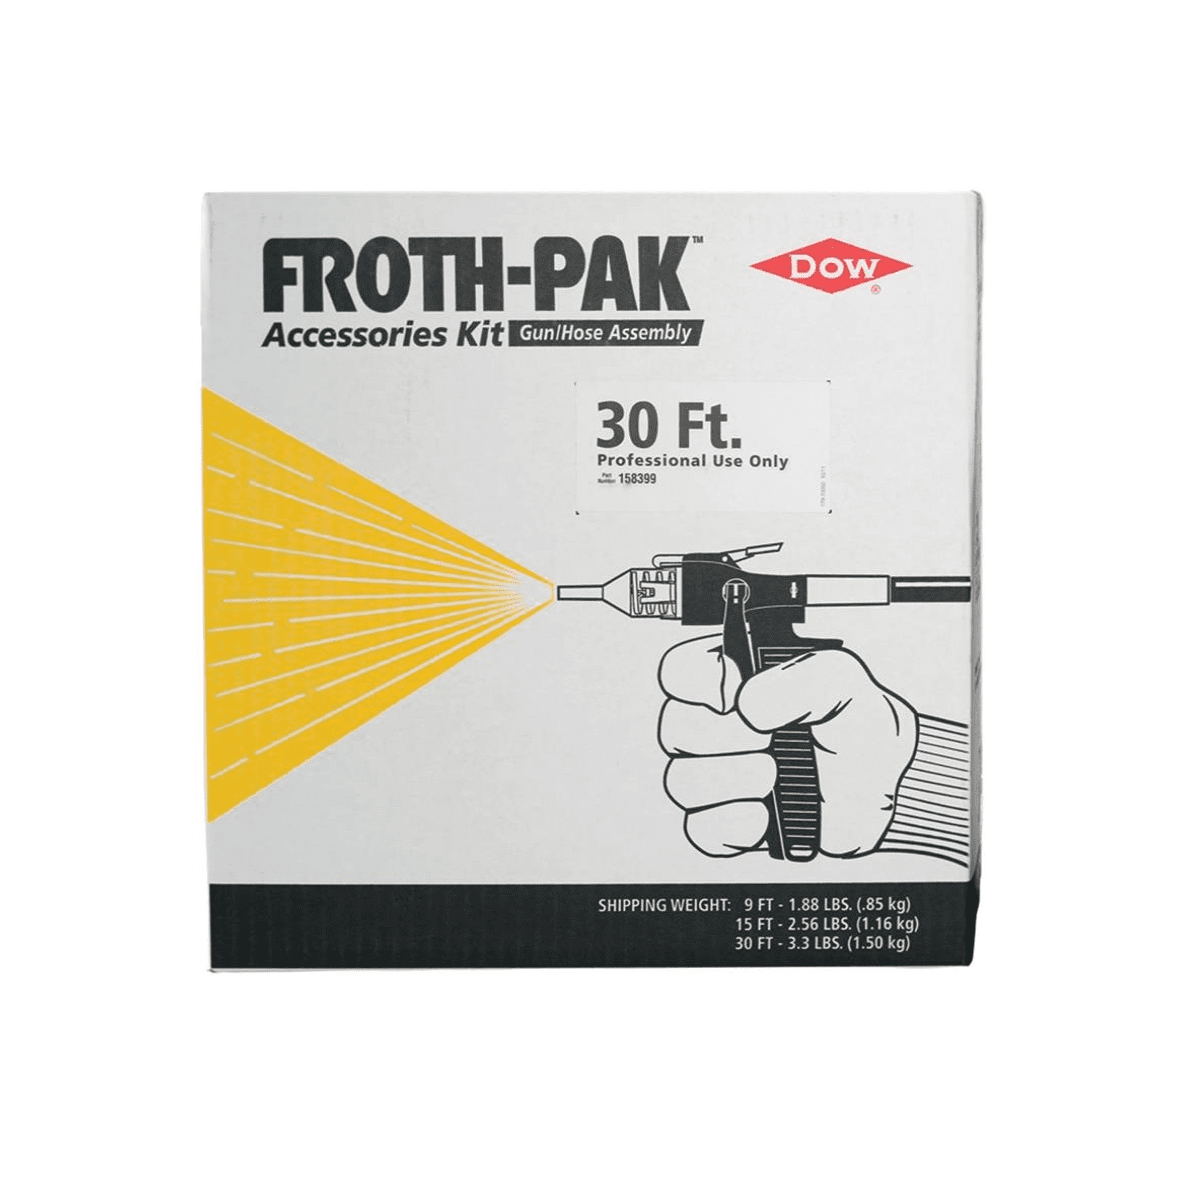 Gun & Hose 30 ft Assembly for Froth-Pak Spray Foam Kit.